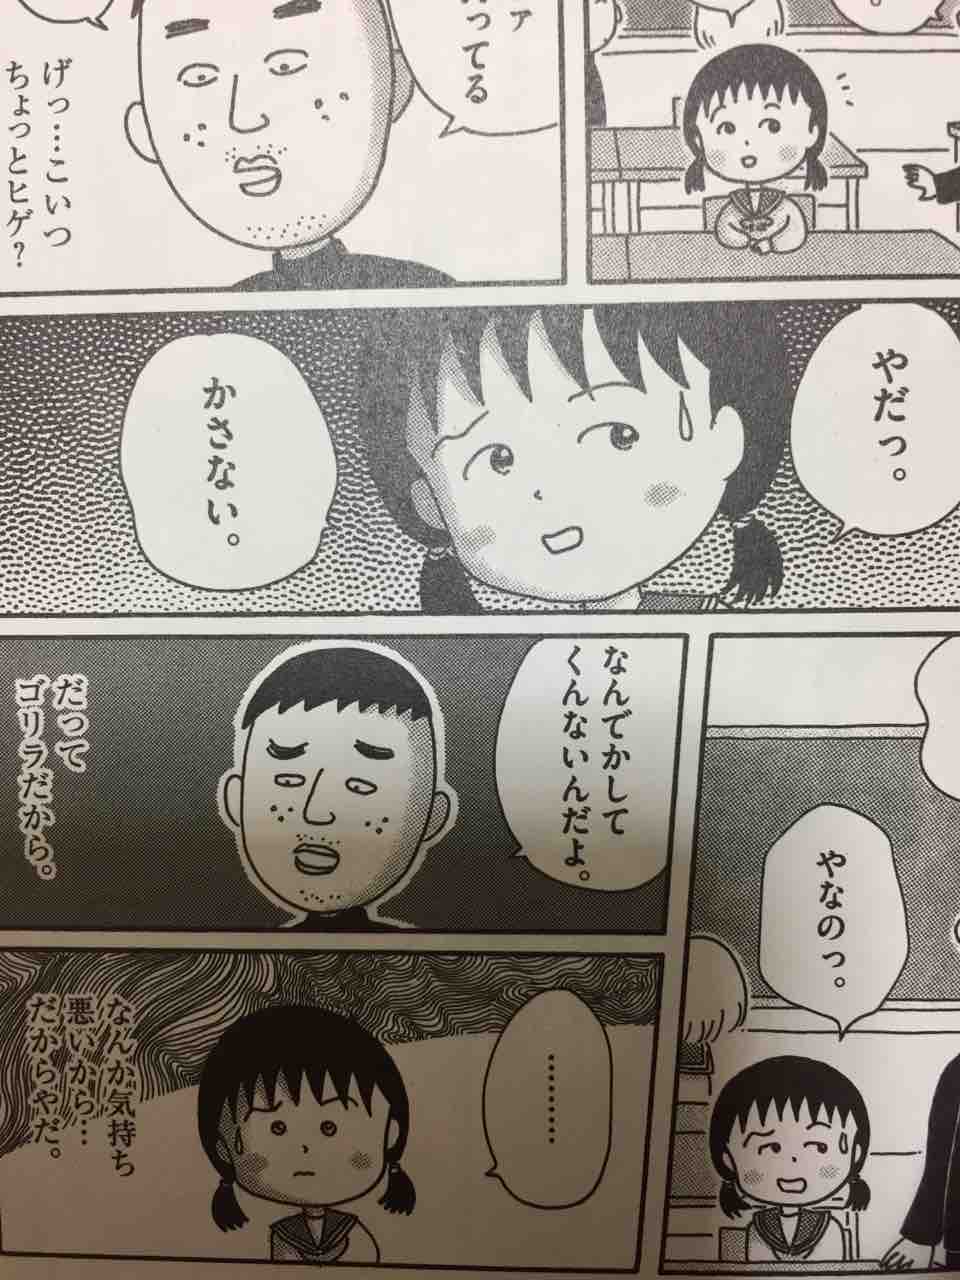 さくらももこ追悼 ひとりずもう 漫画 Yoshidakei18のblog